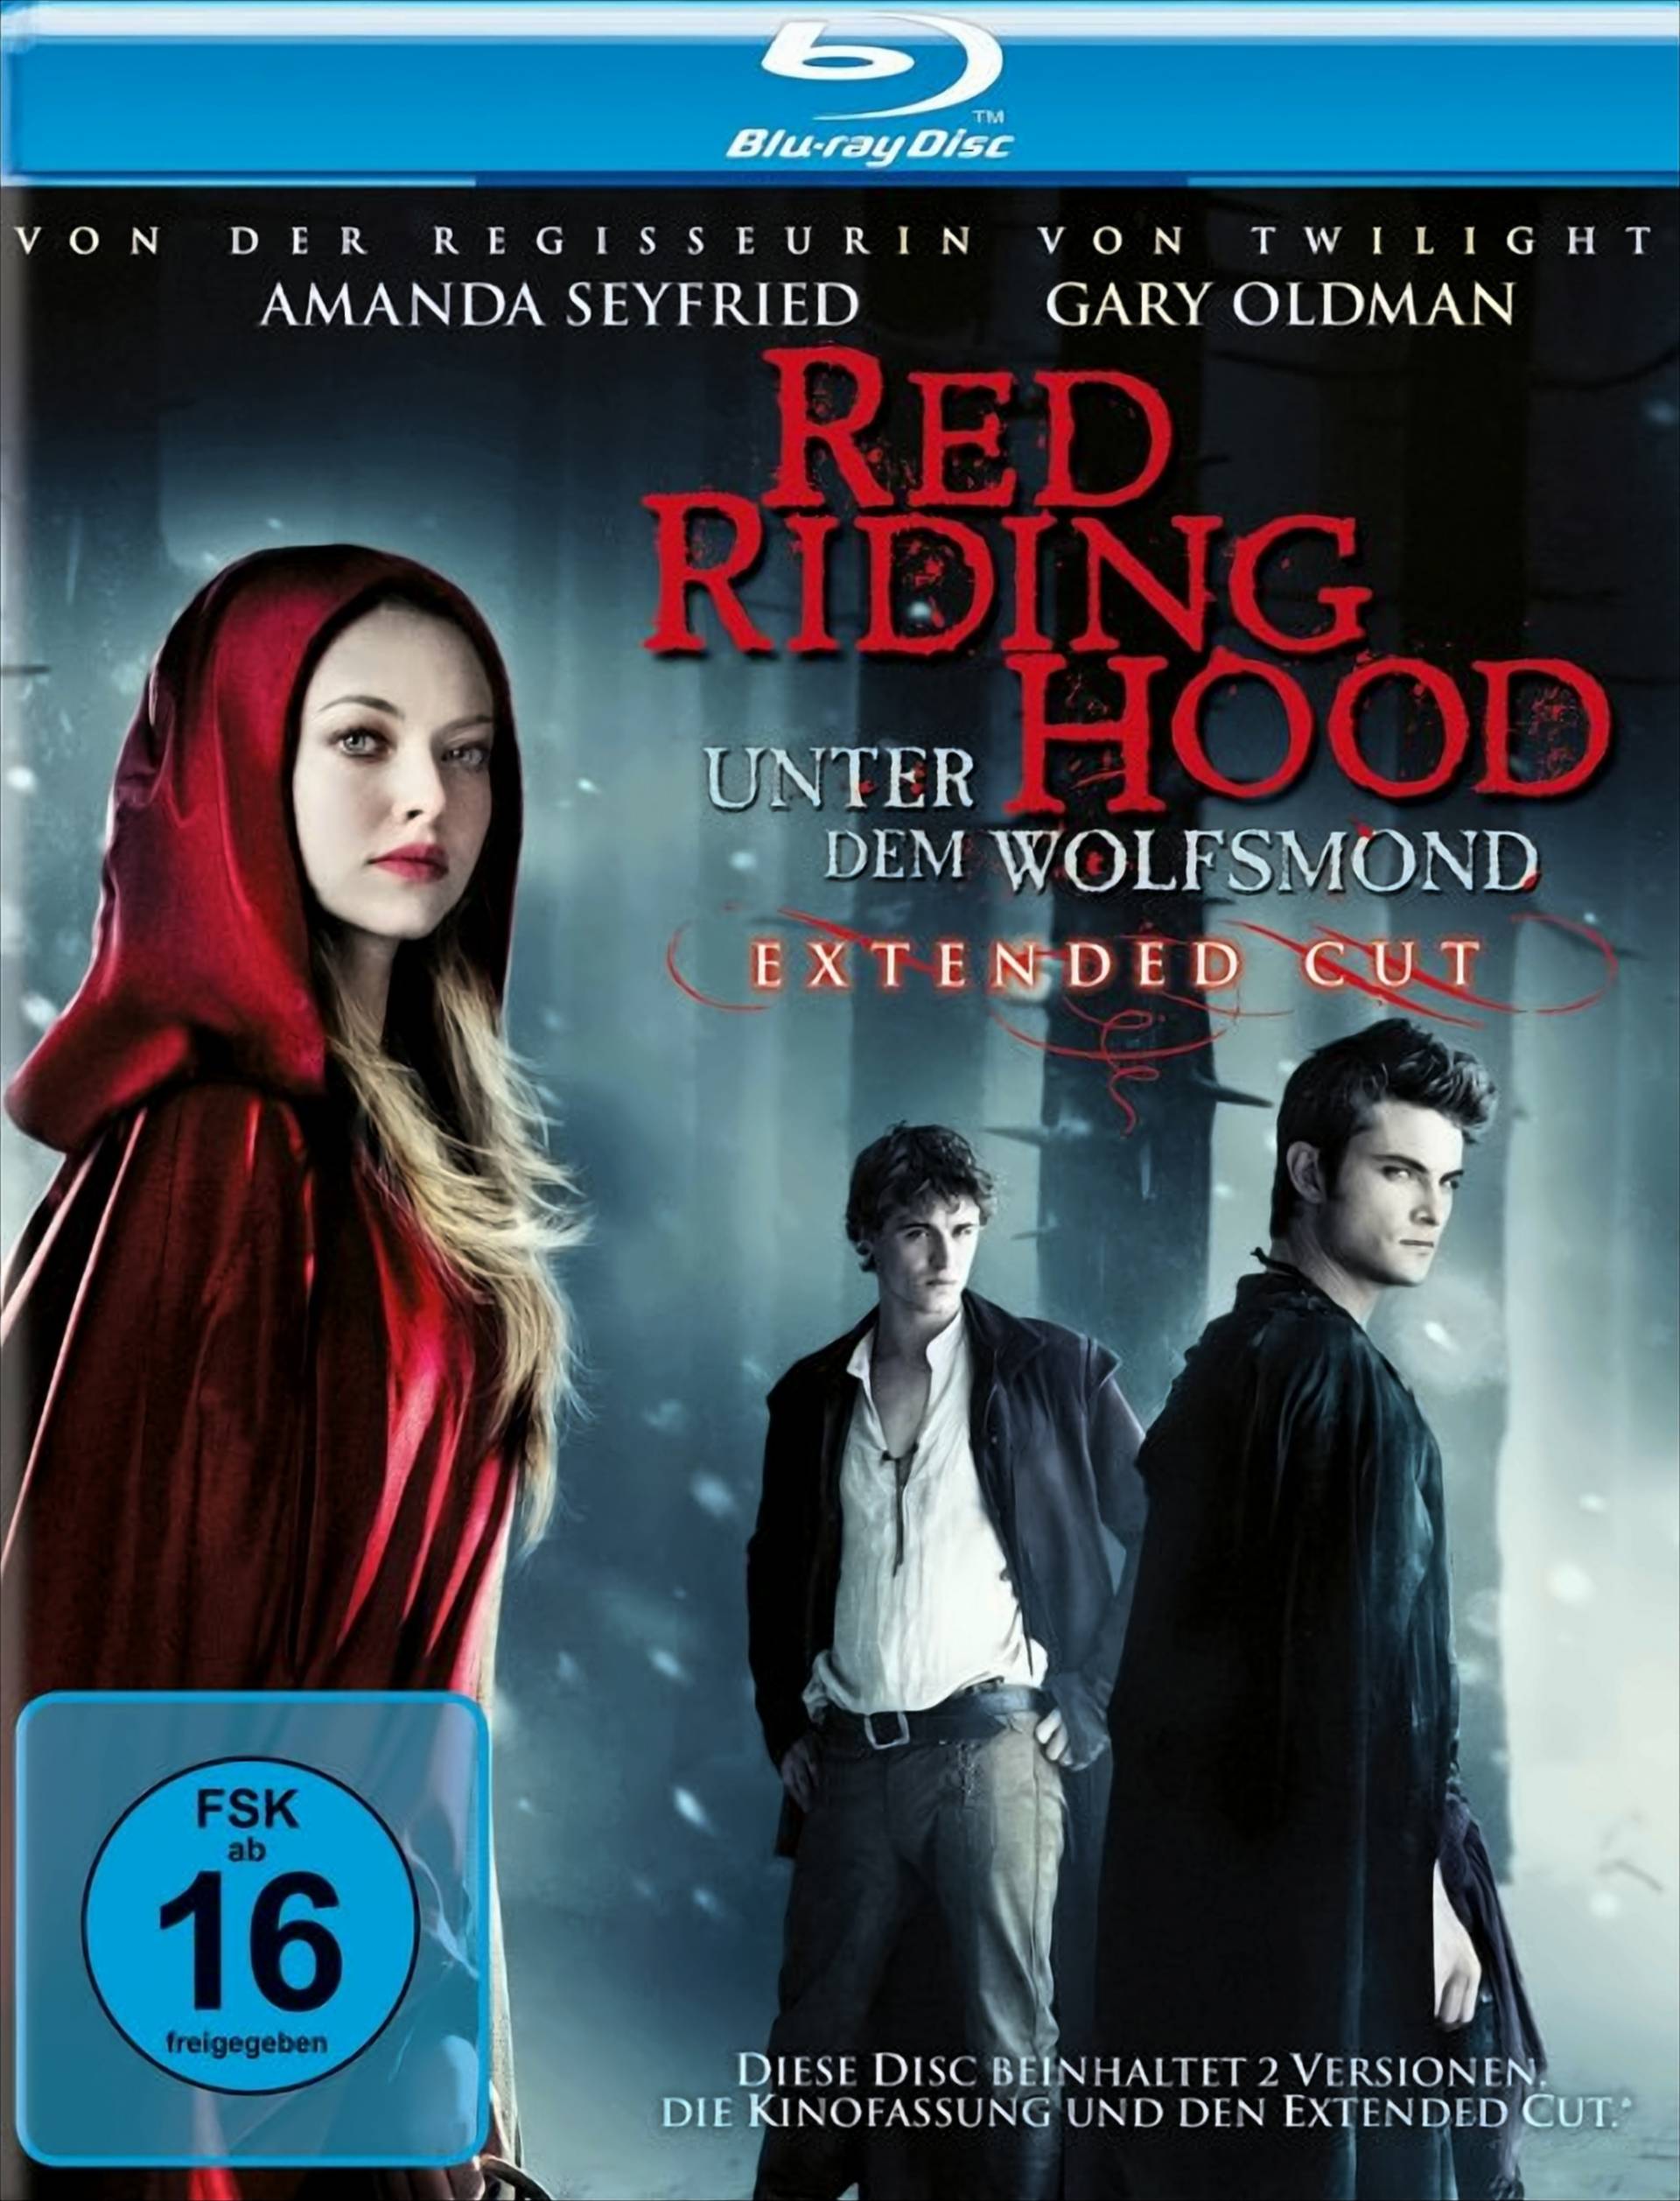 Red Riding Hood - Unter dem Wolfsmond (Extended Cut) von Warner Home Video